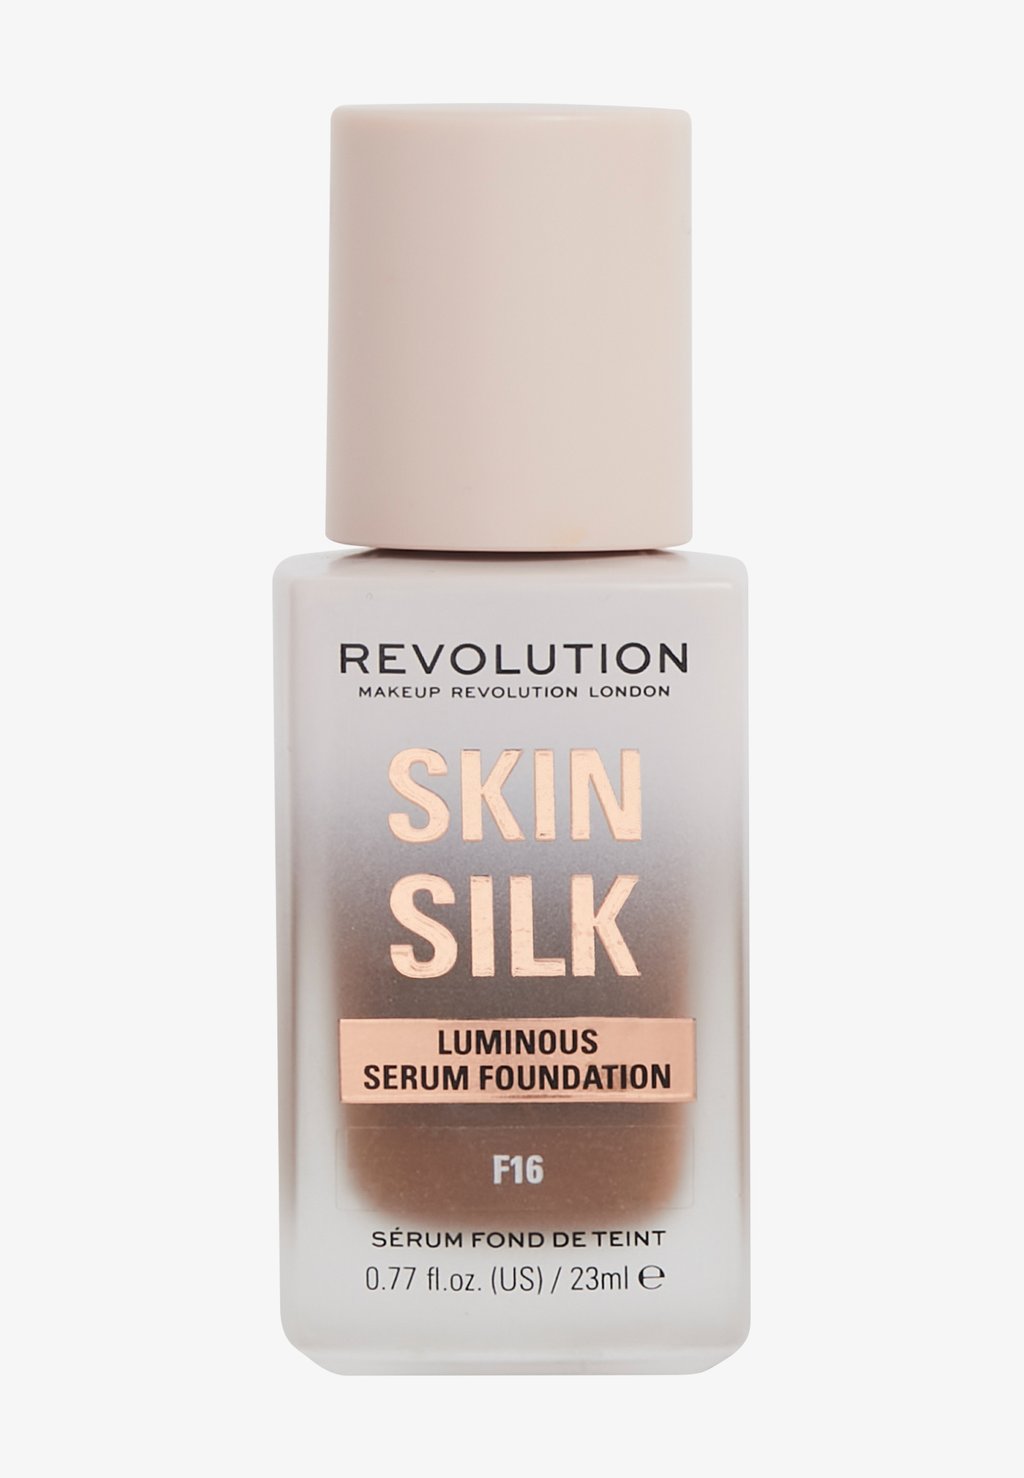 Тональная основа REVOLUTION SKIN SILK SERUM FOUNDATION Makeup Revolution, цвет f16